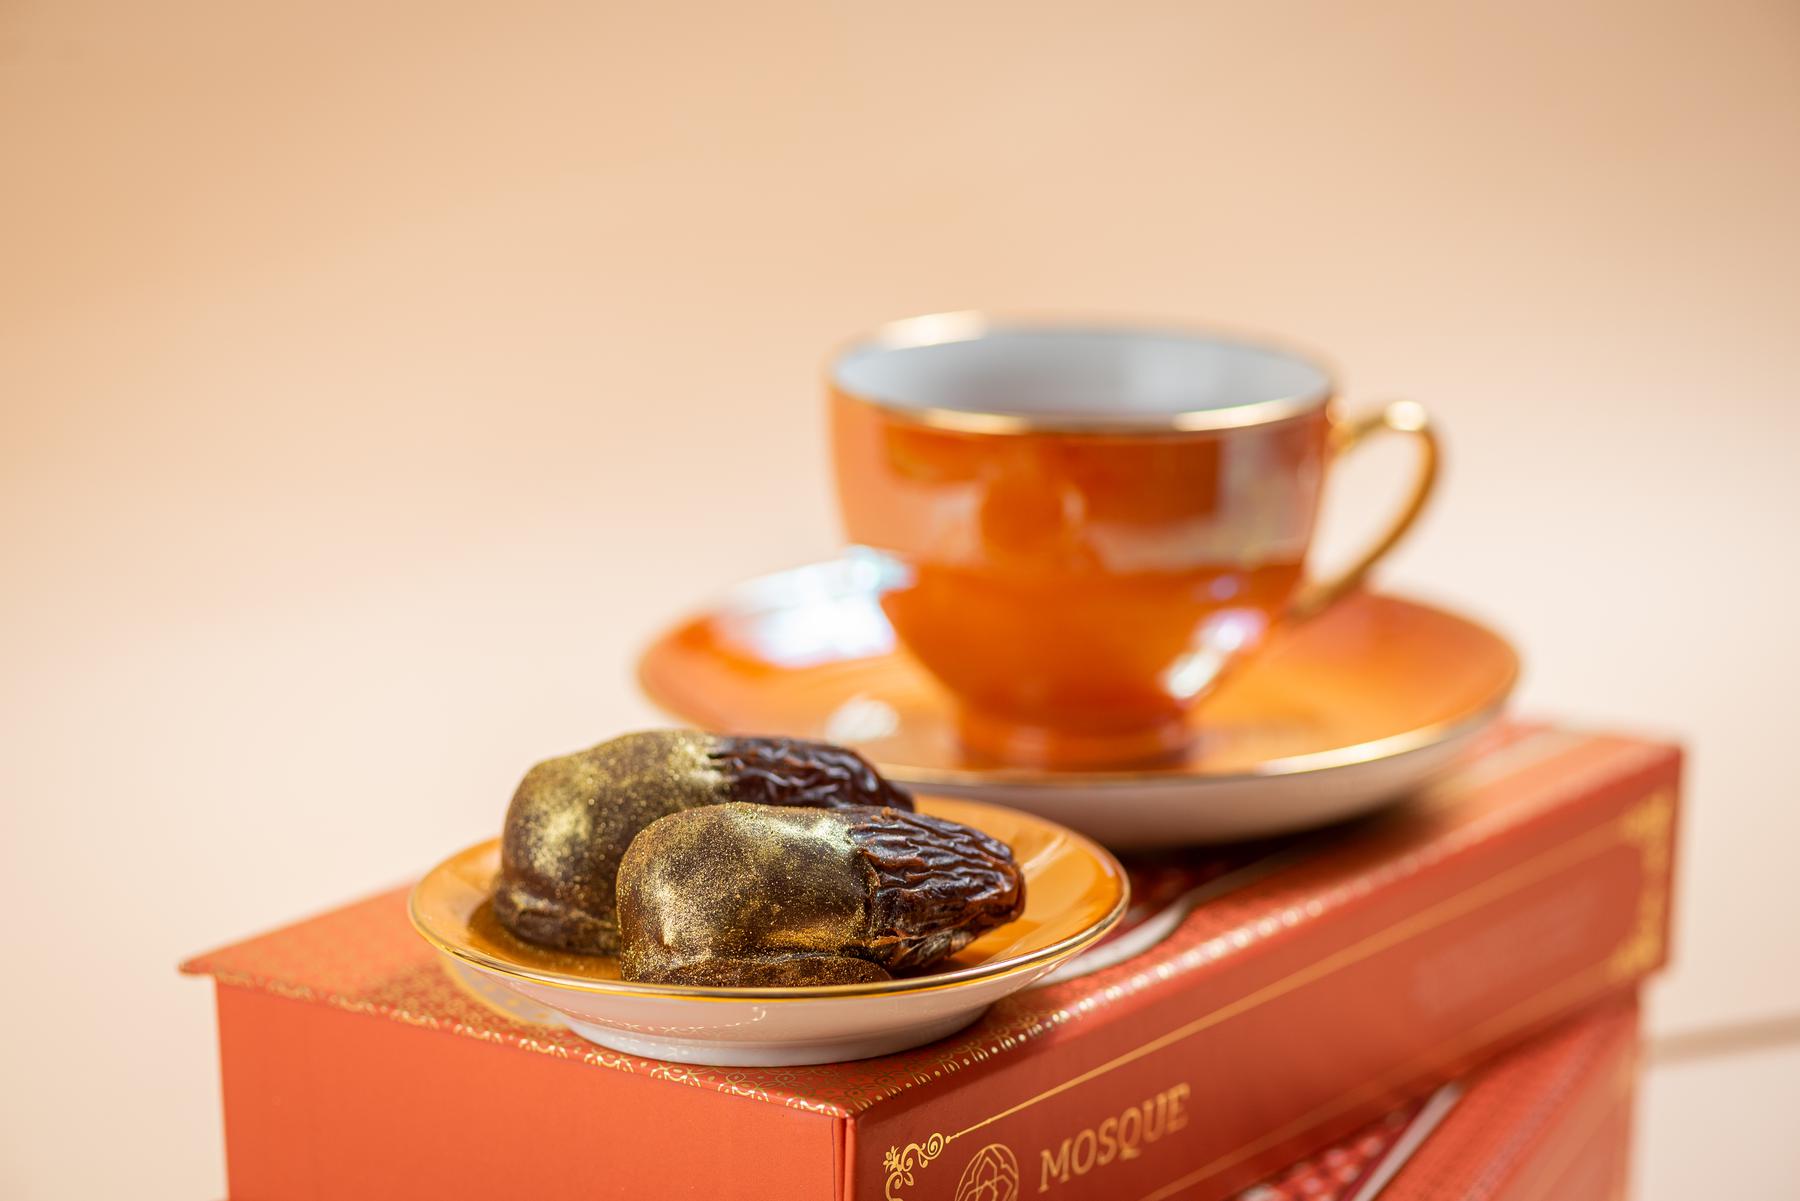 Confeitaria vende tâmaras recheadas com chocolate e pintadas de dourado - Toujours Fotografia/Divulgação